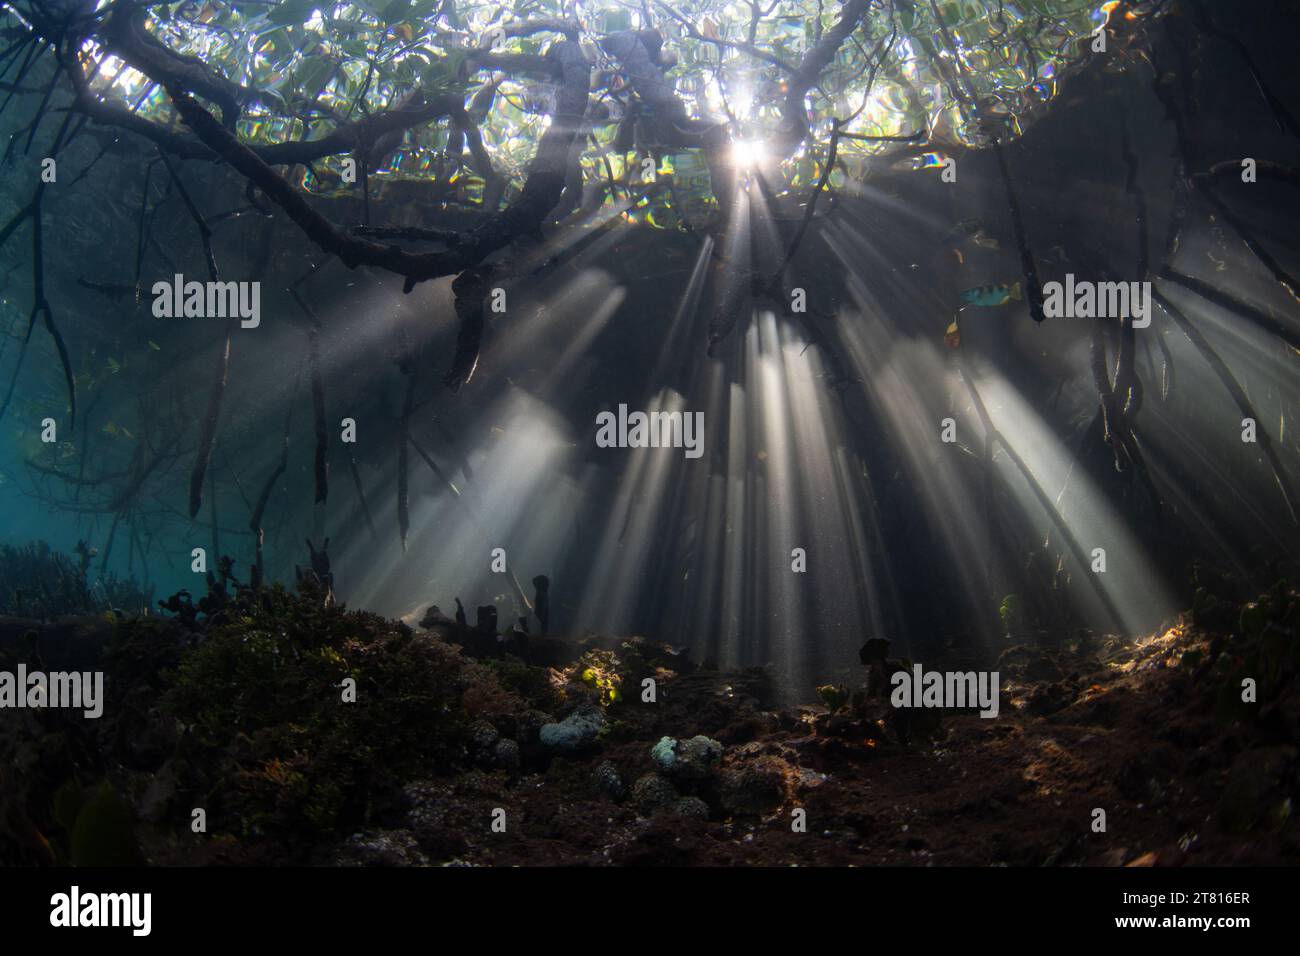 La luce del sole filtra sott'acqua nelle ombre di una foresta di mangrovie scure che cresce in Raja Ampat, Indonesia. Le mangrovie sono habitat marini vitali. Foto Stock